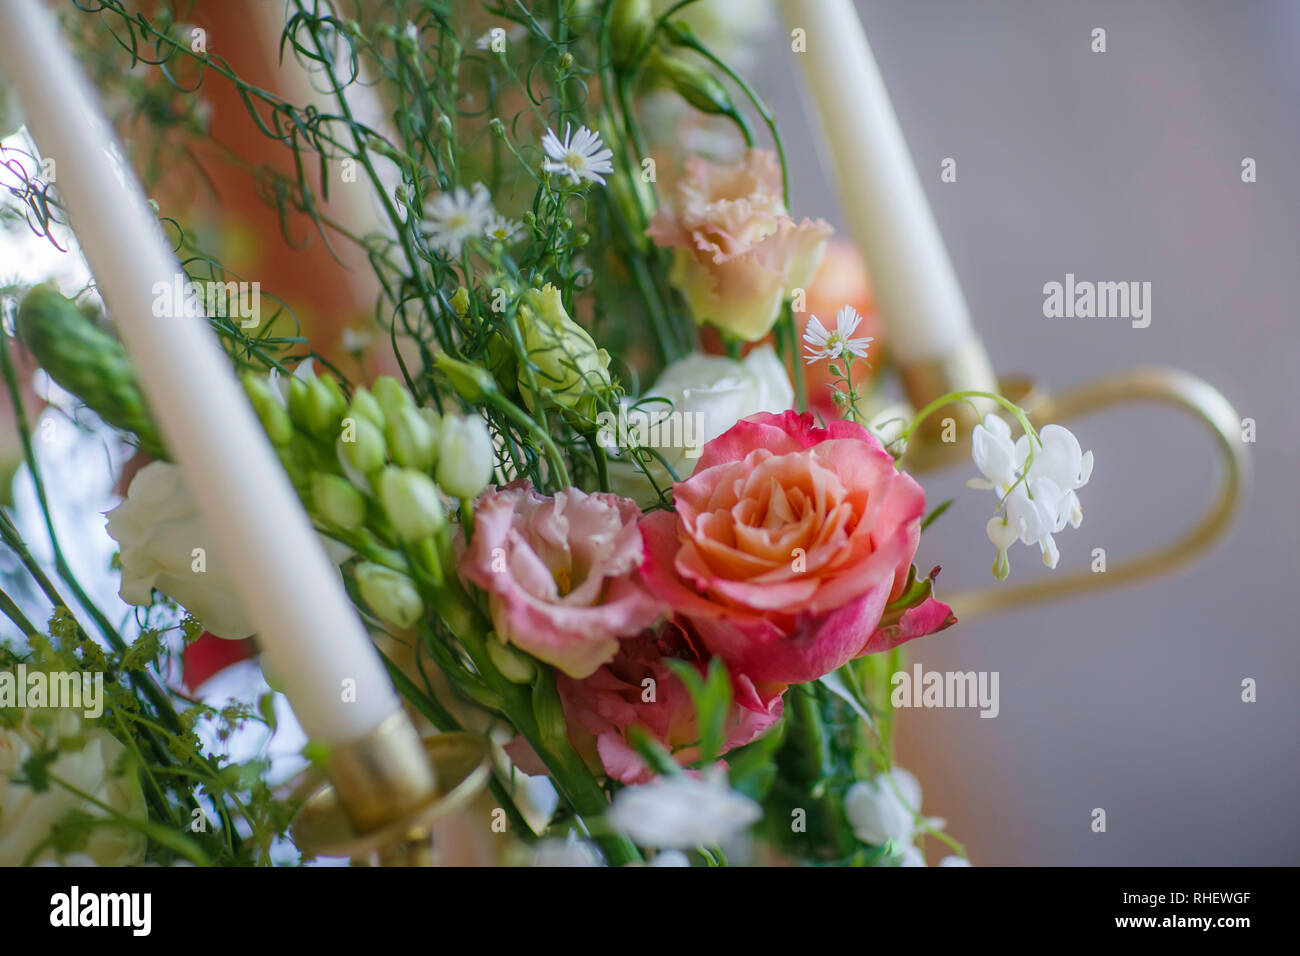 Beau mariage bouquet de fleurs orange. Pas de personnes. Photo couleur vertical. Banque D'Images